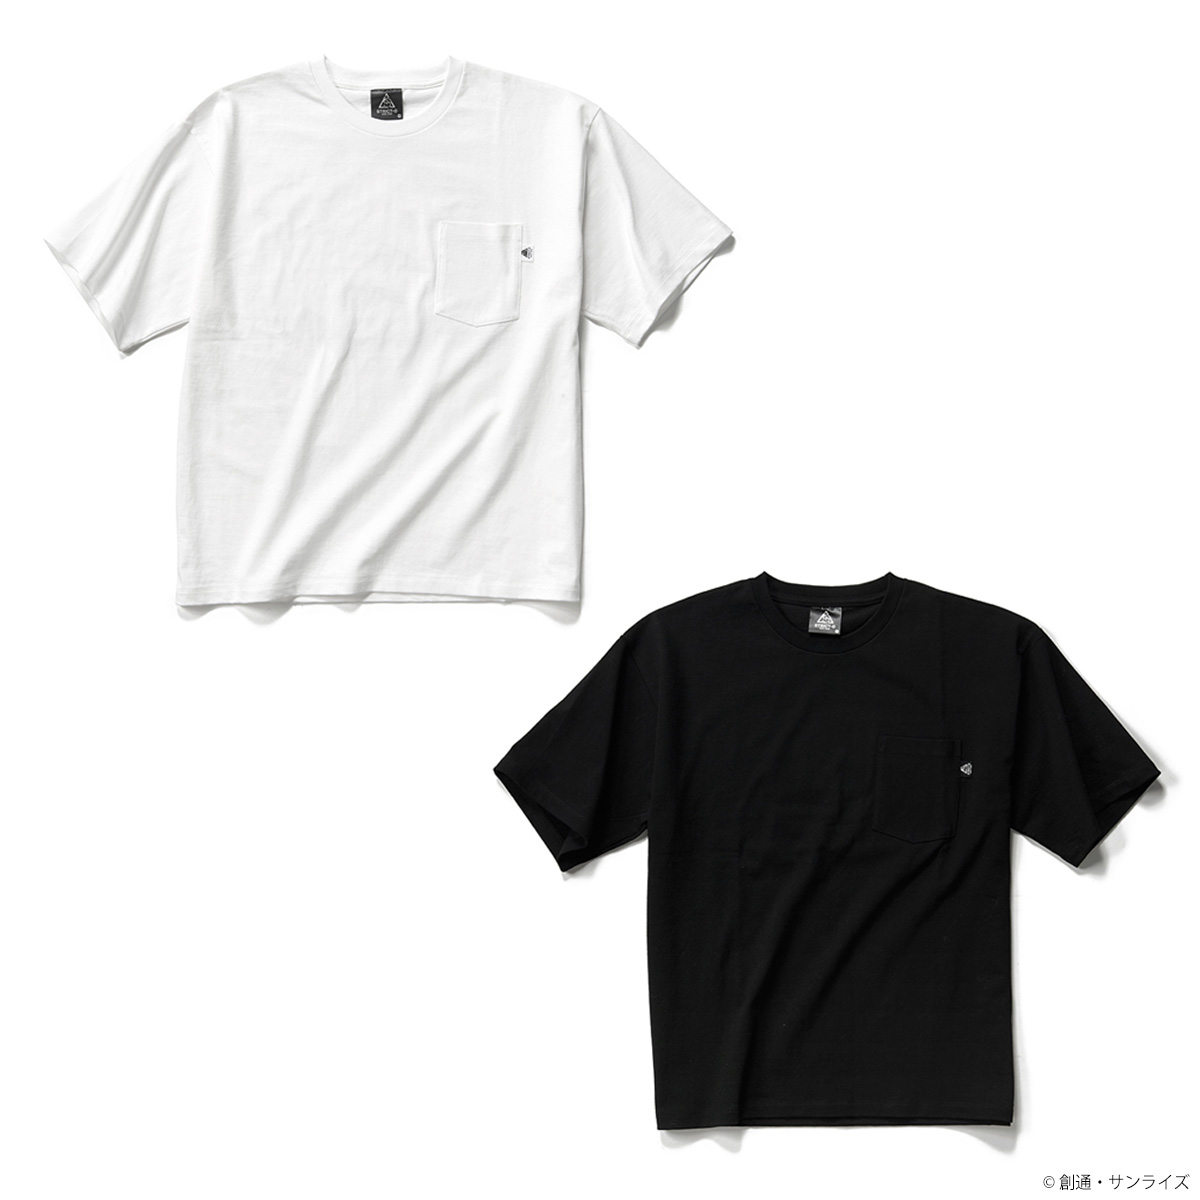 STRICT-G NEW YARK 新作Ｔシャツ＆ポロシャツ、6月22日（土）より発売！